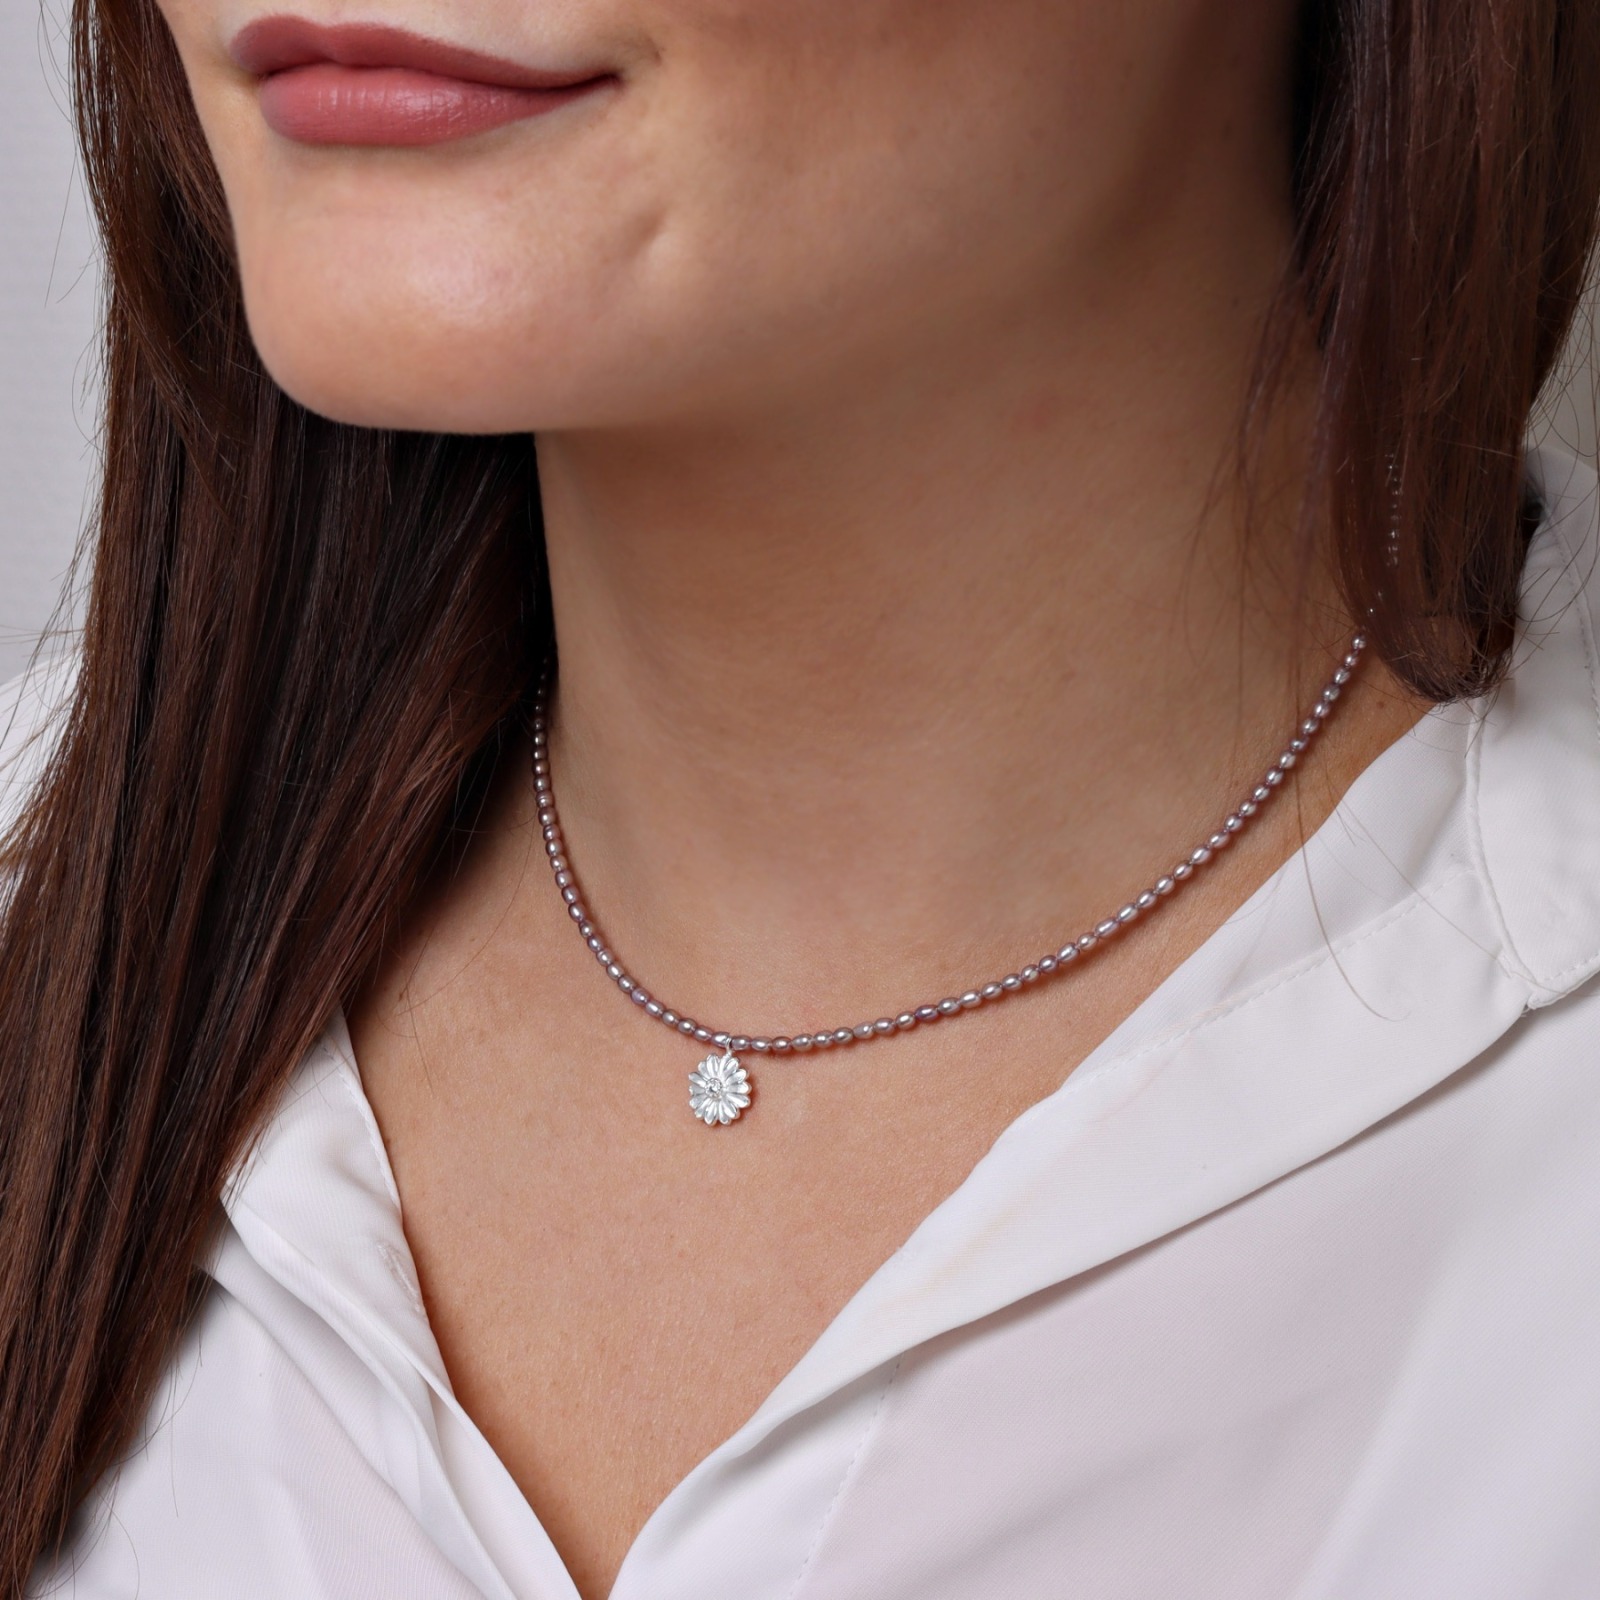 Perlenkette rosè aus echten Süßwasser-Perlen mit kleinem Anhänger Blüte -  Filigrane Perlenkette mit Anhänger Blüte | Online Shop | KARYSMA